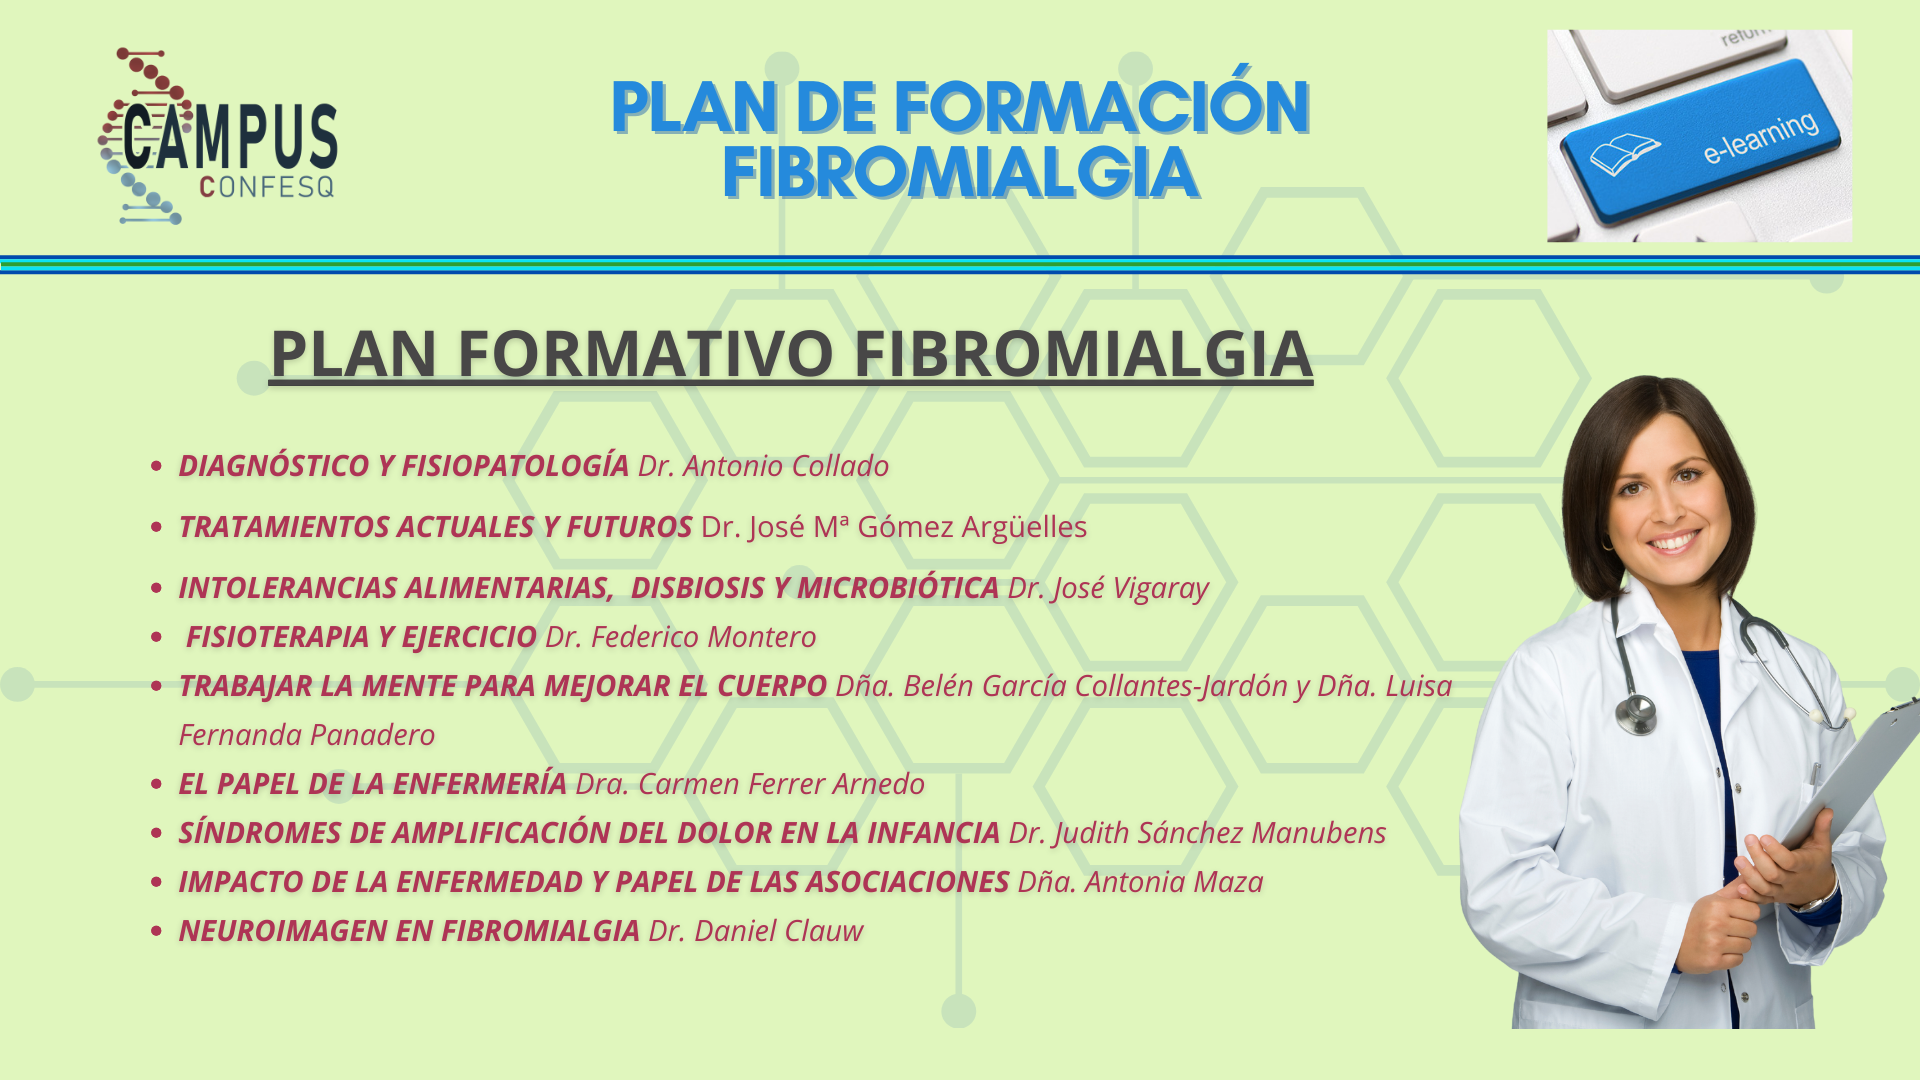 PLAN DE FORMACIÓN FIBROMIALGIA